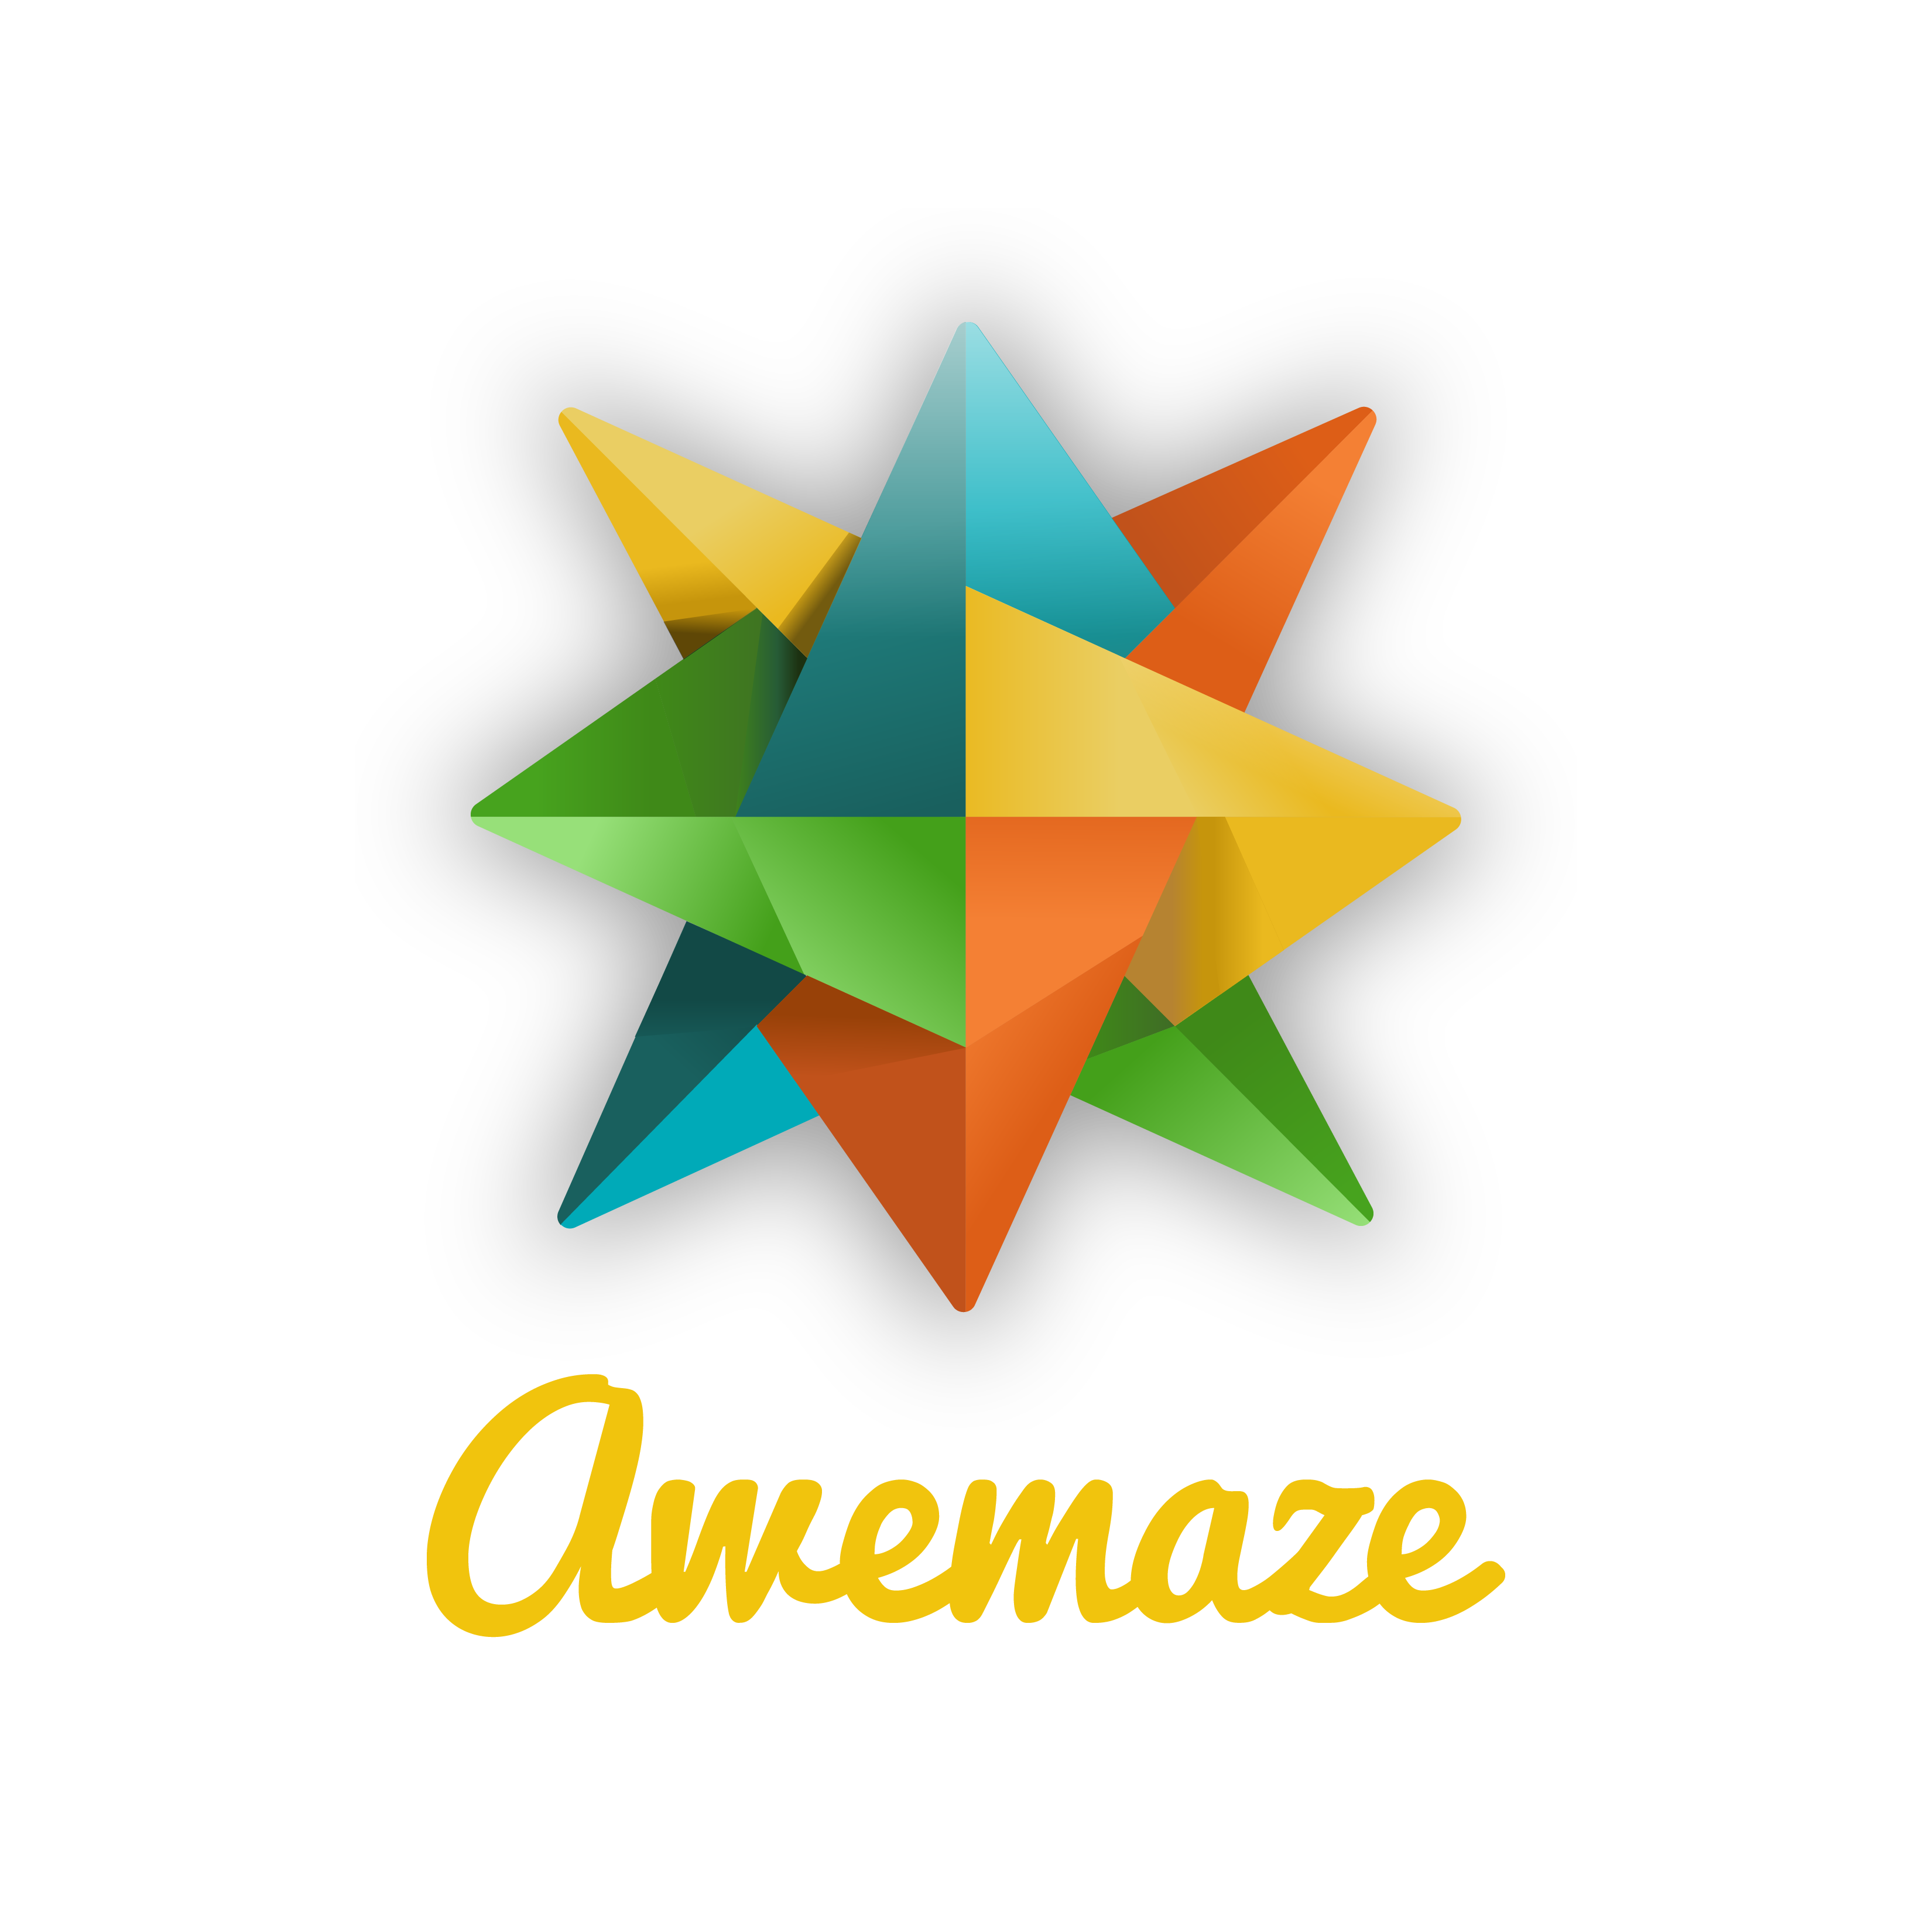 Awemaze Logo